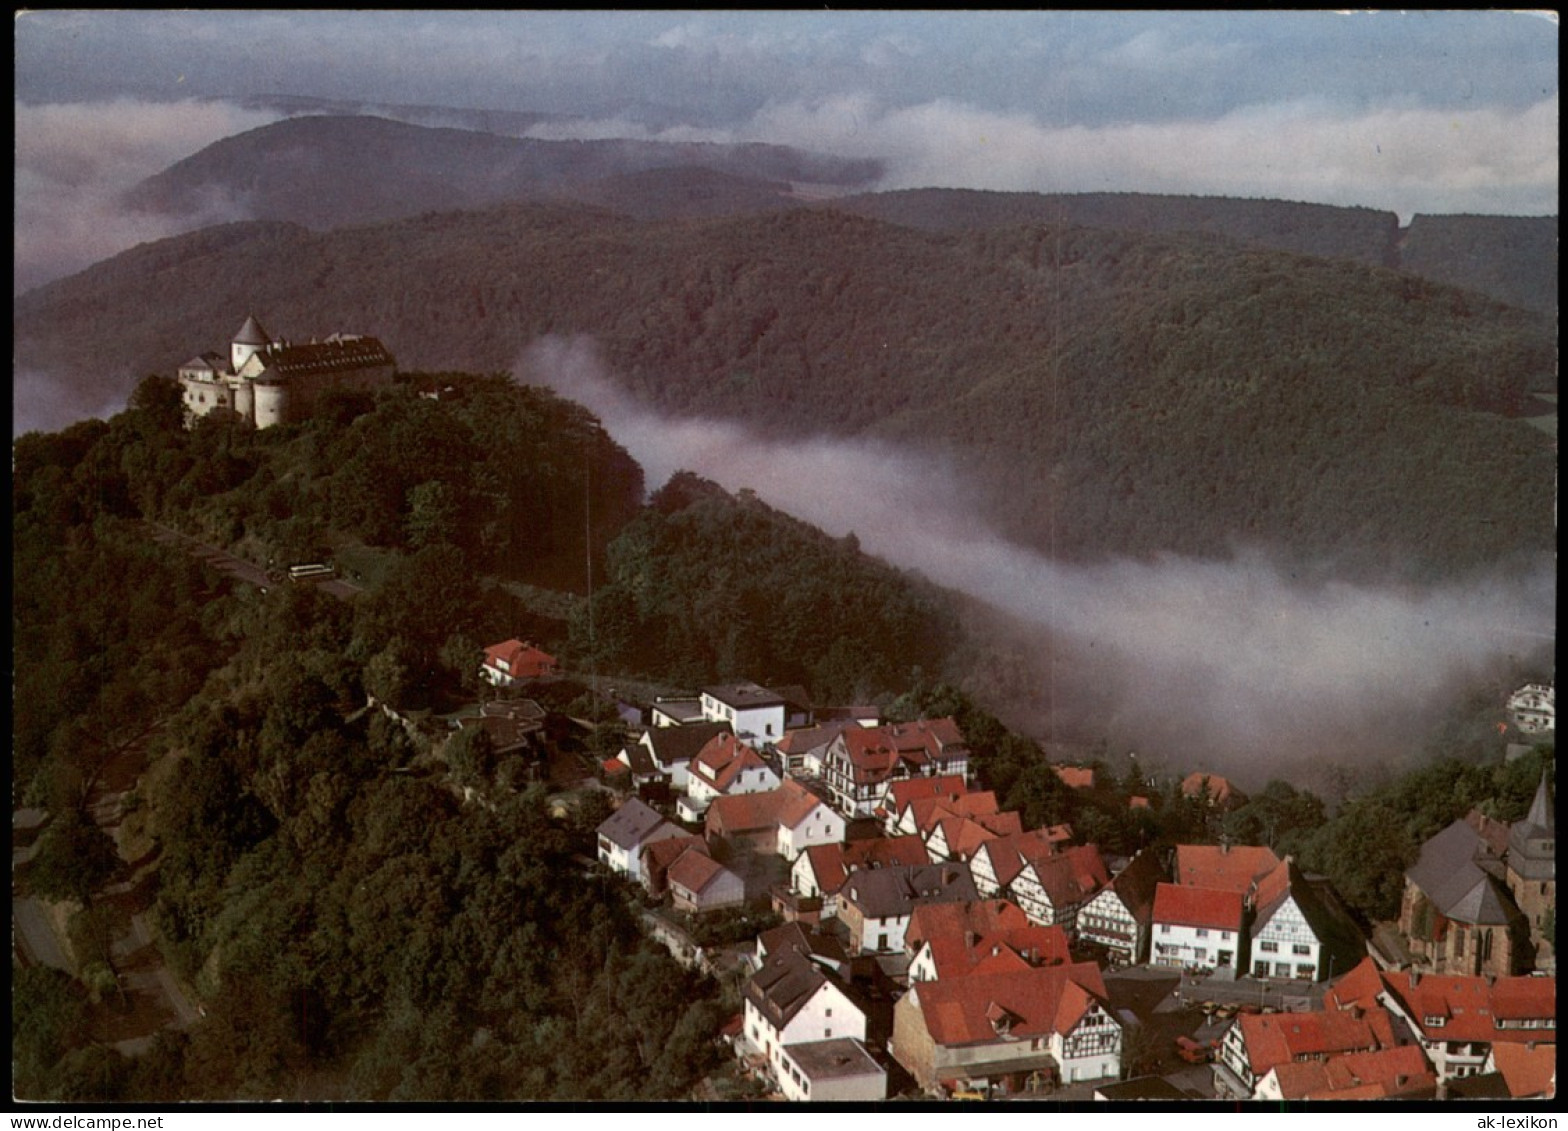 Ansichtskarte Waldeck (am Edersee) Luftbild 1986 - Waldeck